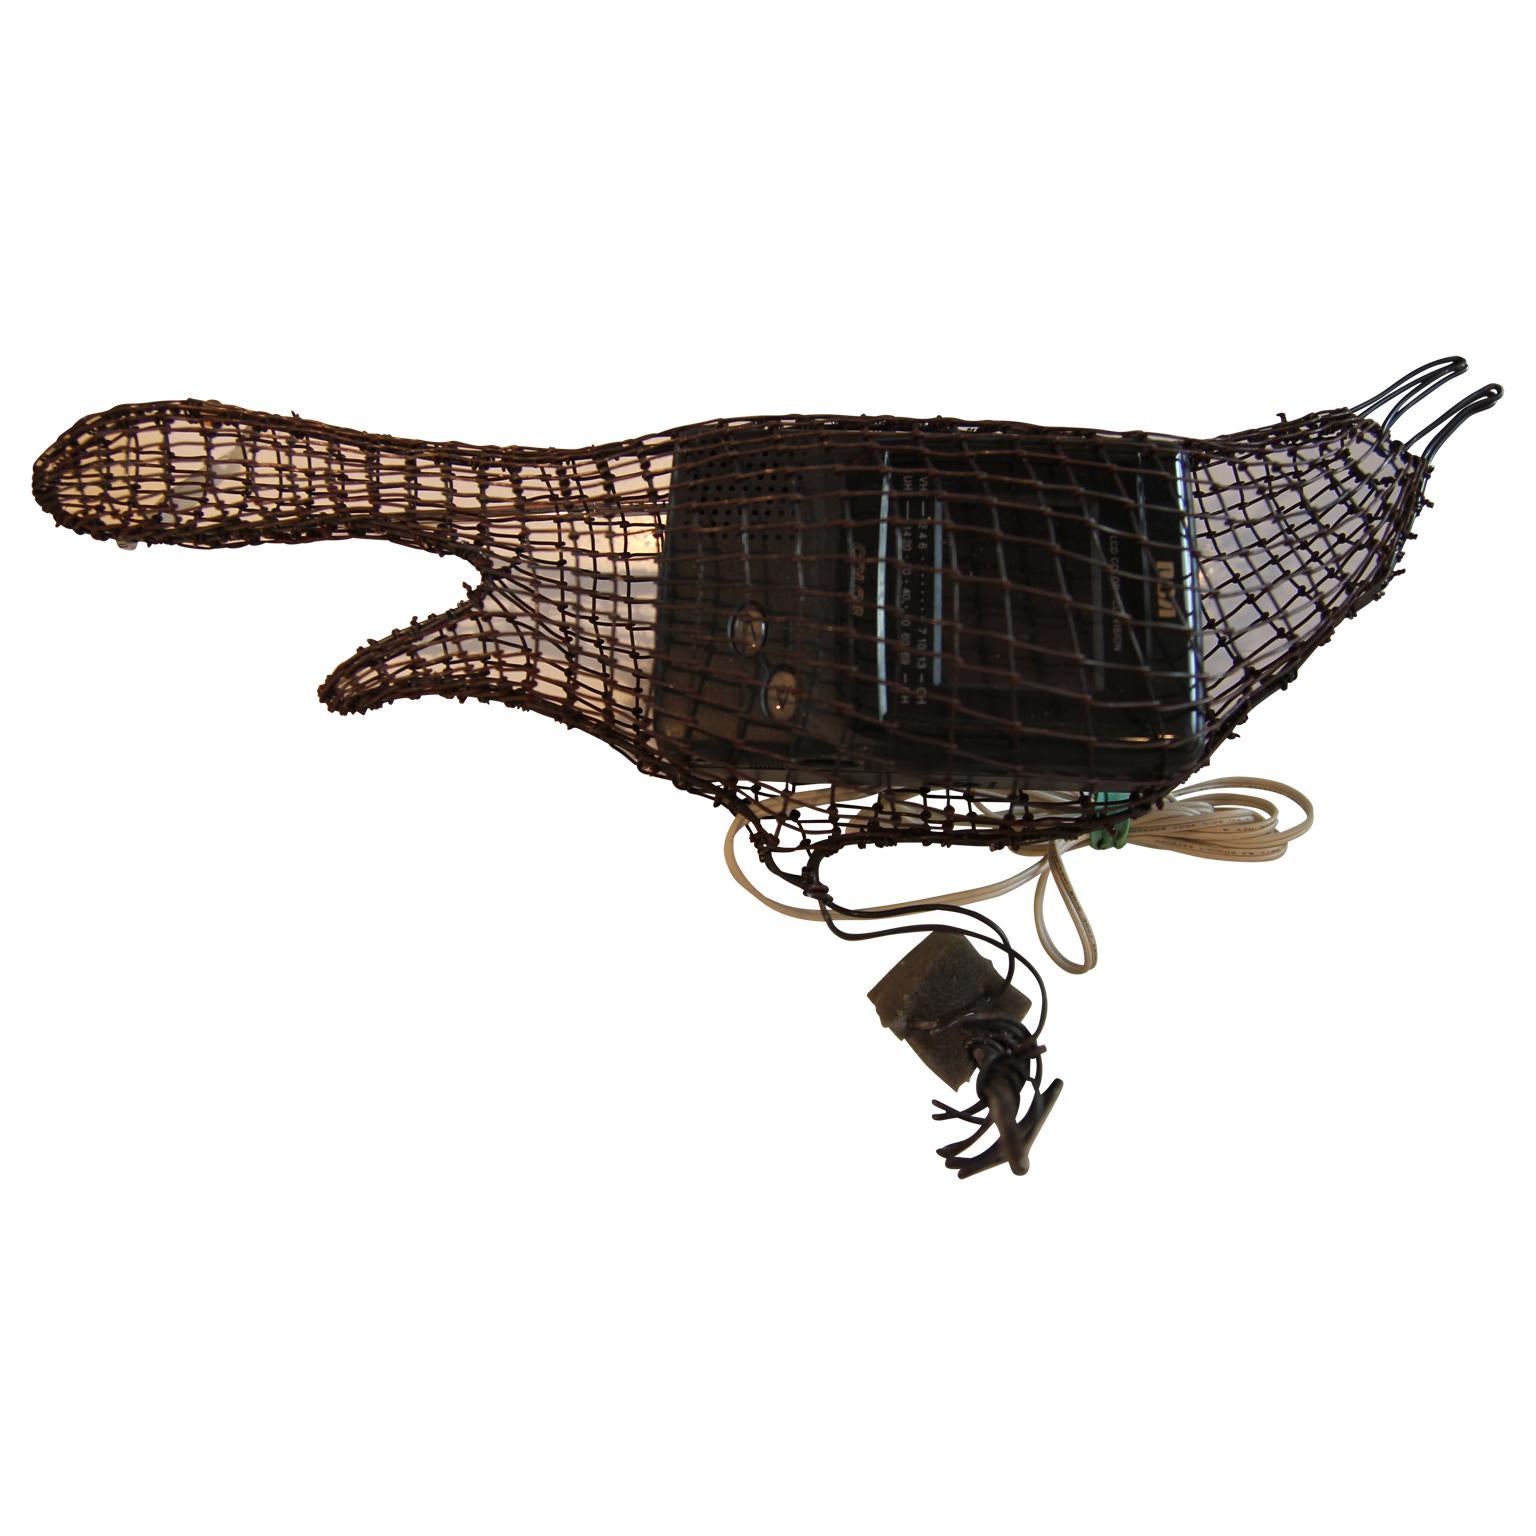 "TV Bird" Contemporary Wire Grackle Bird Sculptures with RCV Pocket TV - Mixed Media Art by Helen Altman